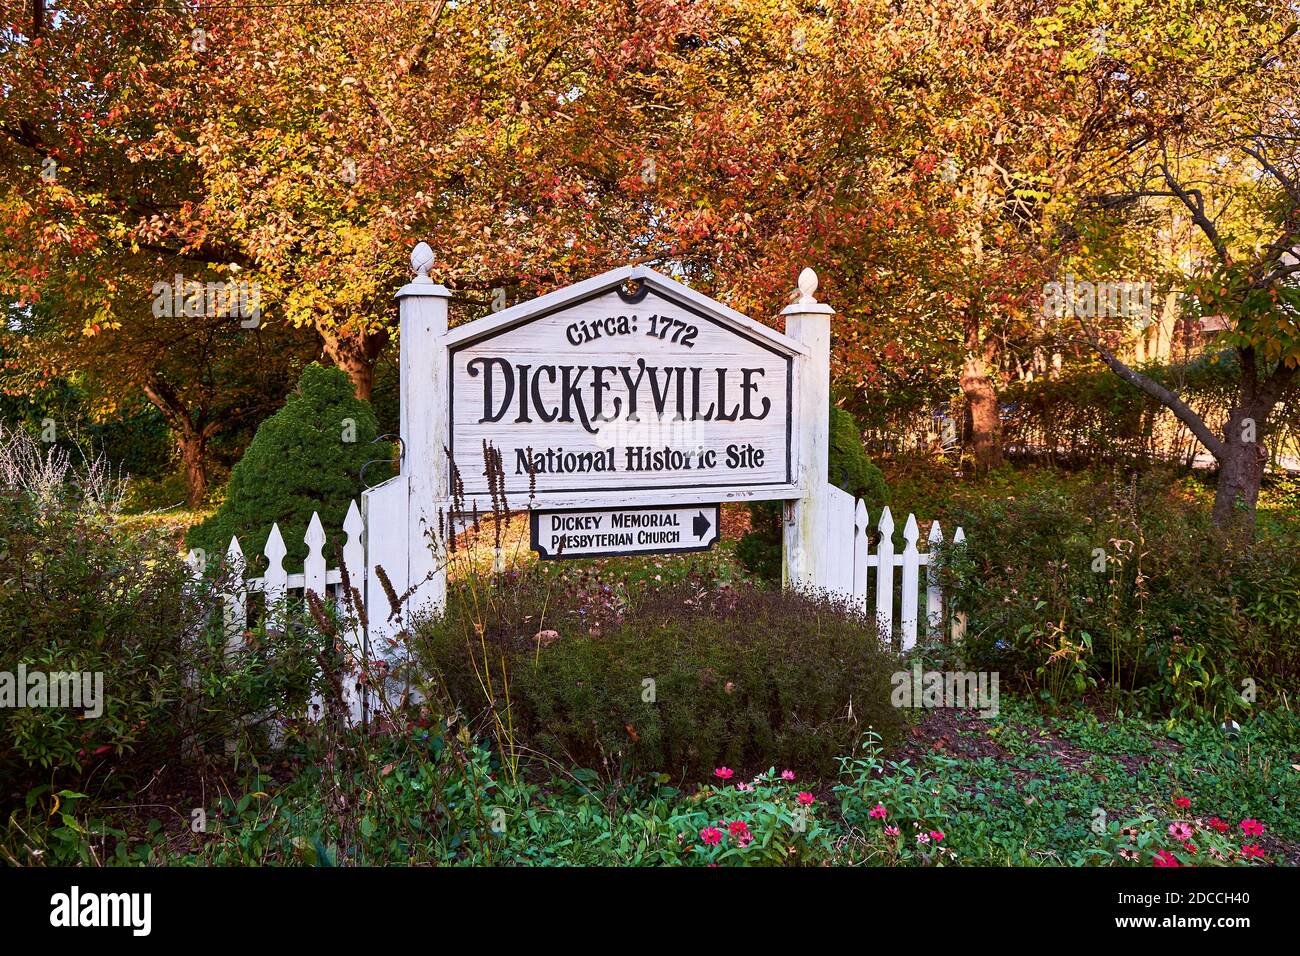 L'ingresso, cartello di benvenuto a Dickeyville, la città storica dei mulini dell'epoca coloniale. A Baltimora, Maryland con colore autunnale, foglie autunnali. Foto Stock